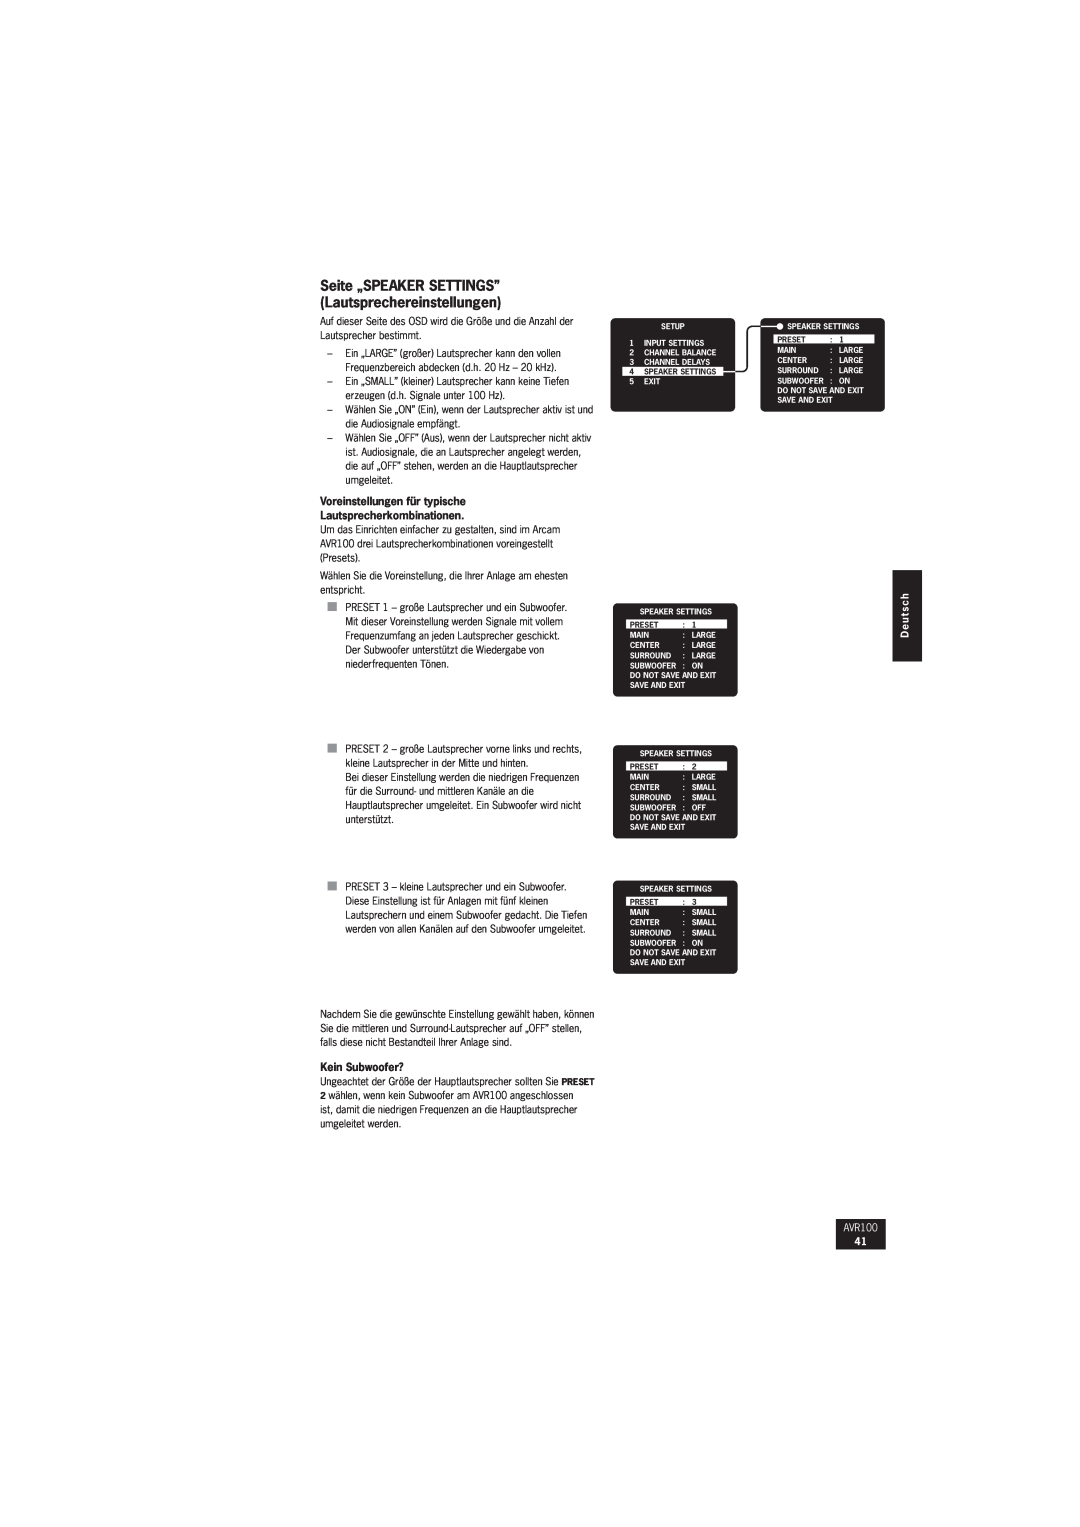 Arcam AVR100 manual Voreinstellungen für typische, Lautsprecherkombinationen, Kein Subwoofer?, D e u t s c h 